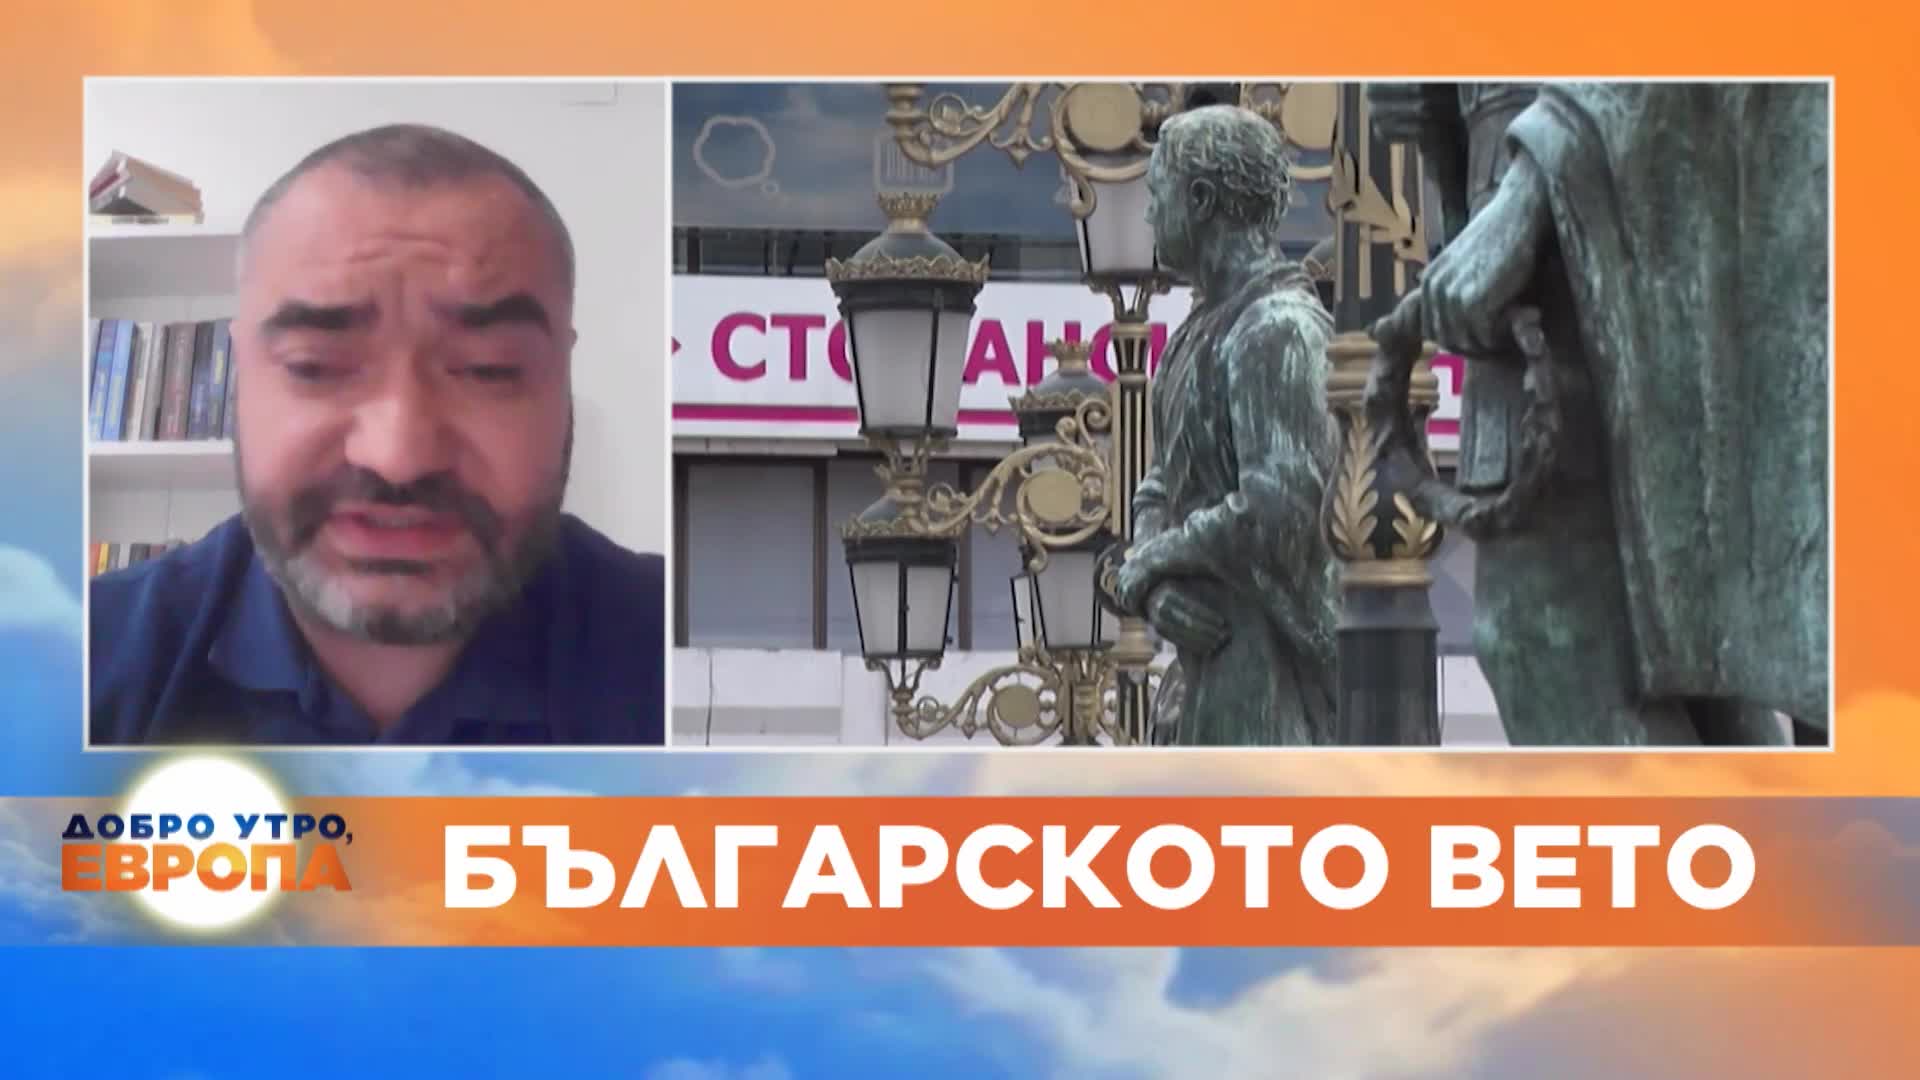 Македонският журналист Атанас Величков за ветото на България.mp4